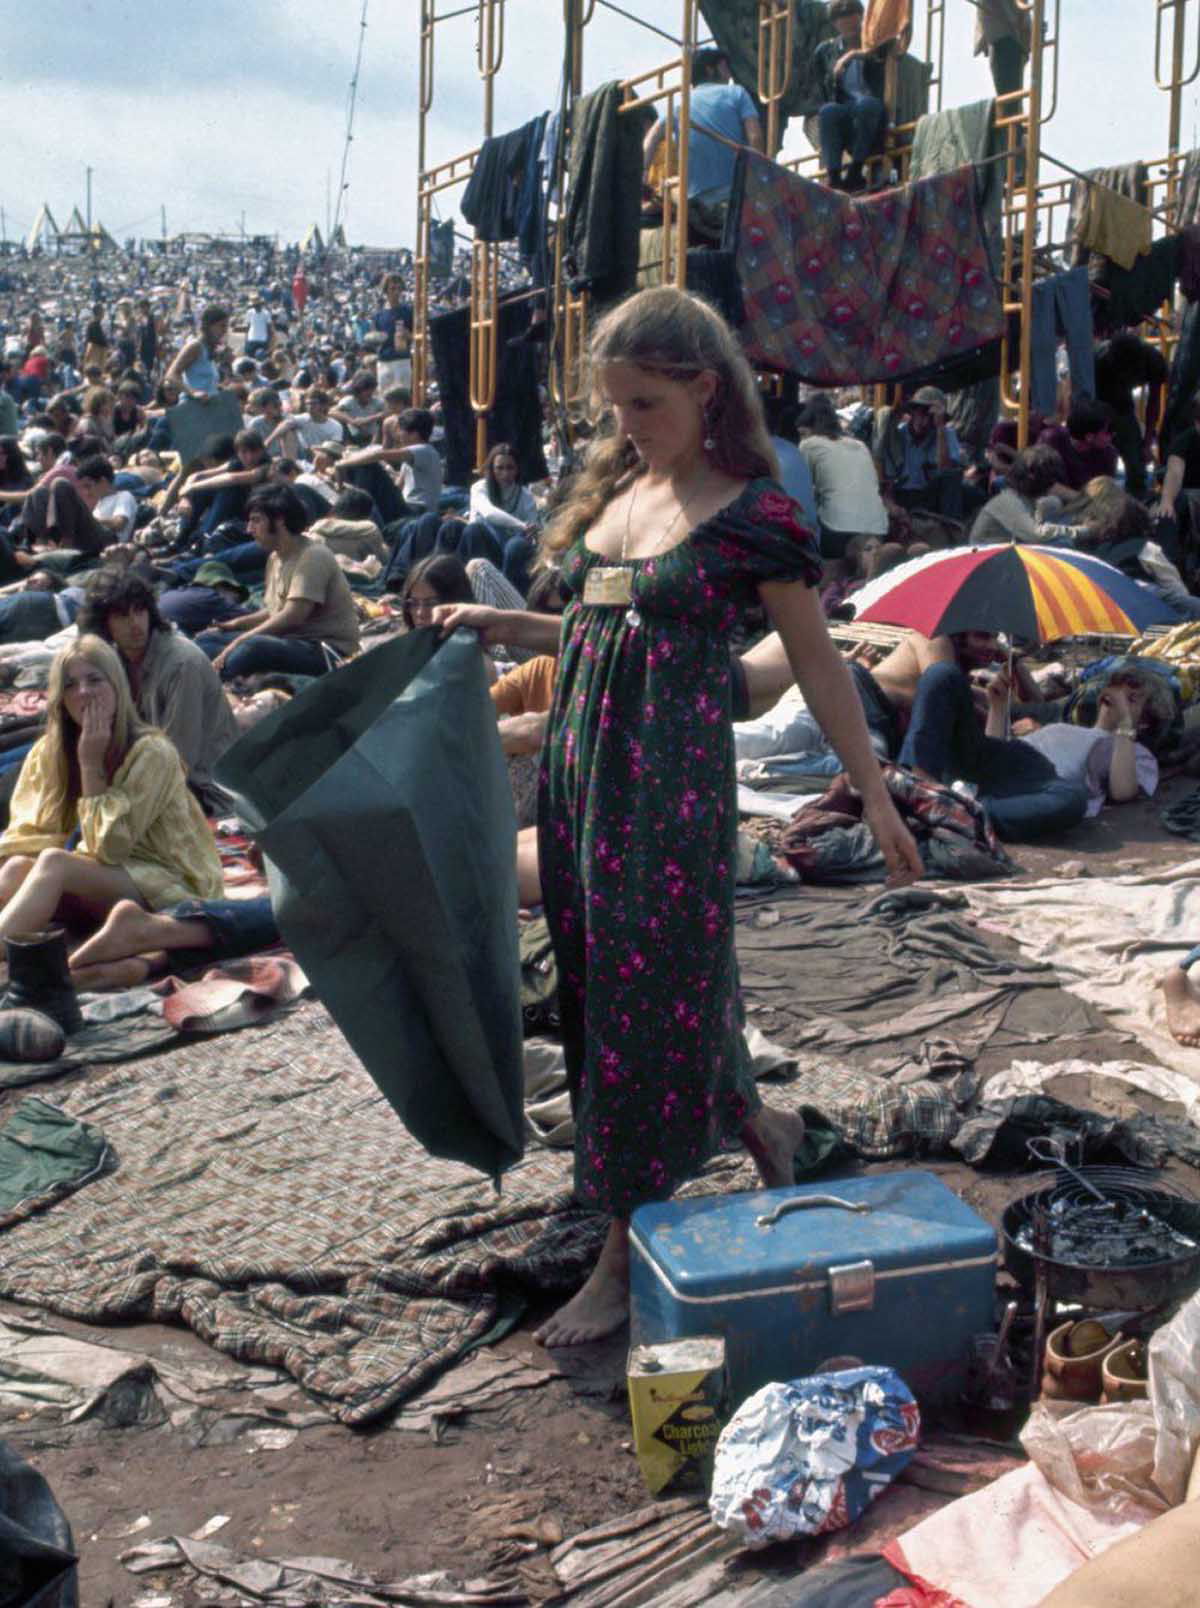 Fotos impressionantes retratam a moda rebelde de Woodstock em 1969 05